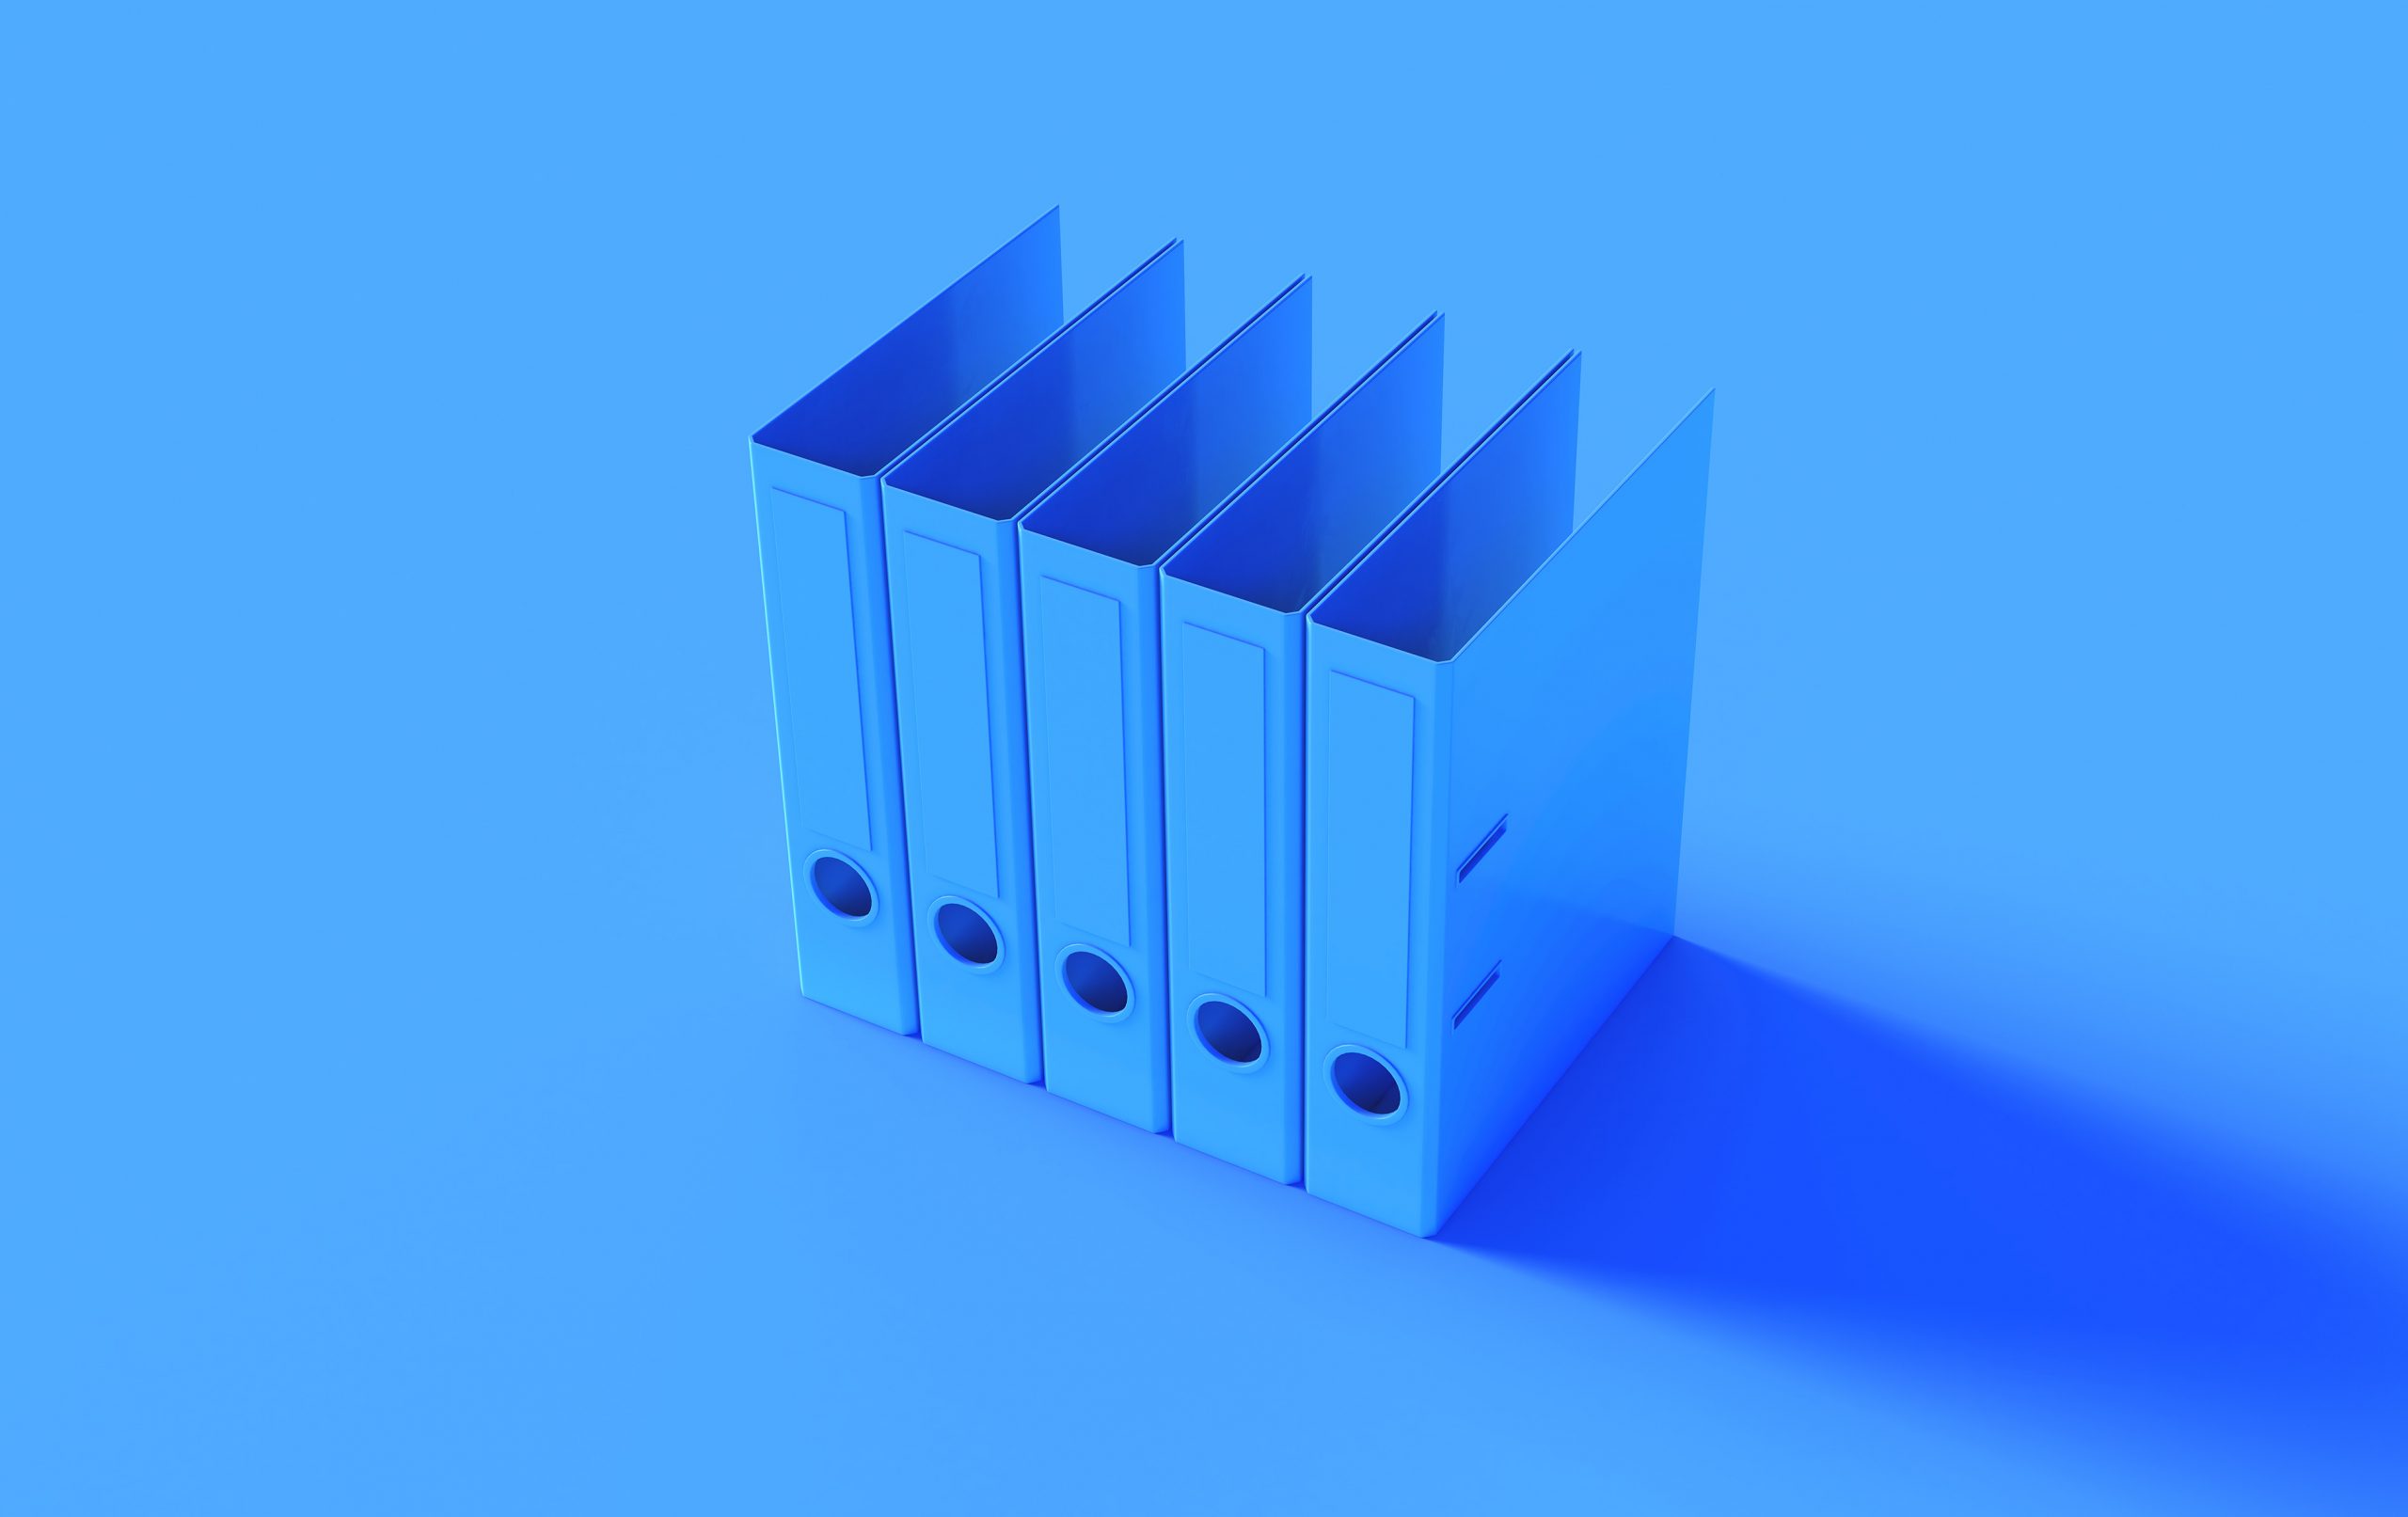 Blue Office Ring Binders 3D illustration 3D render